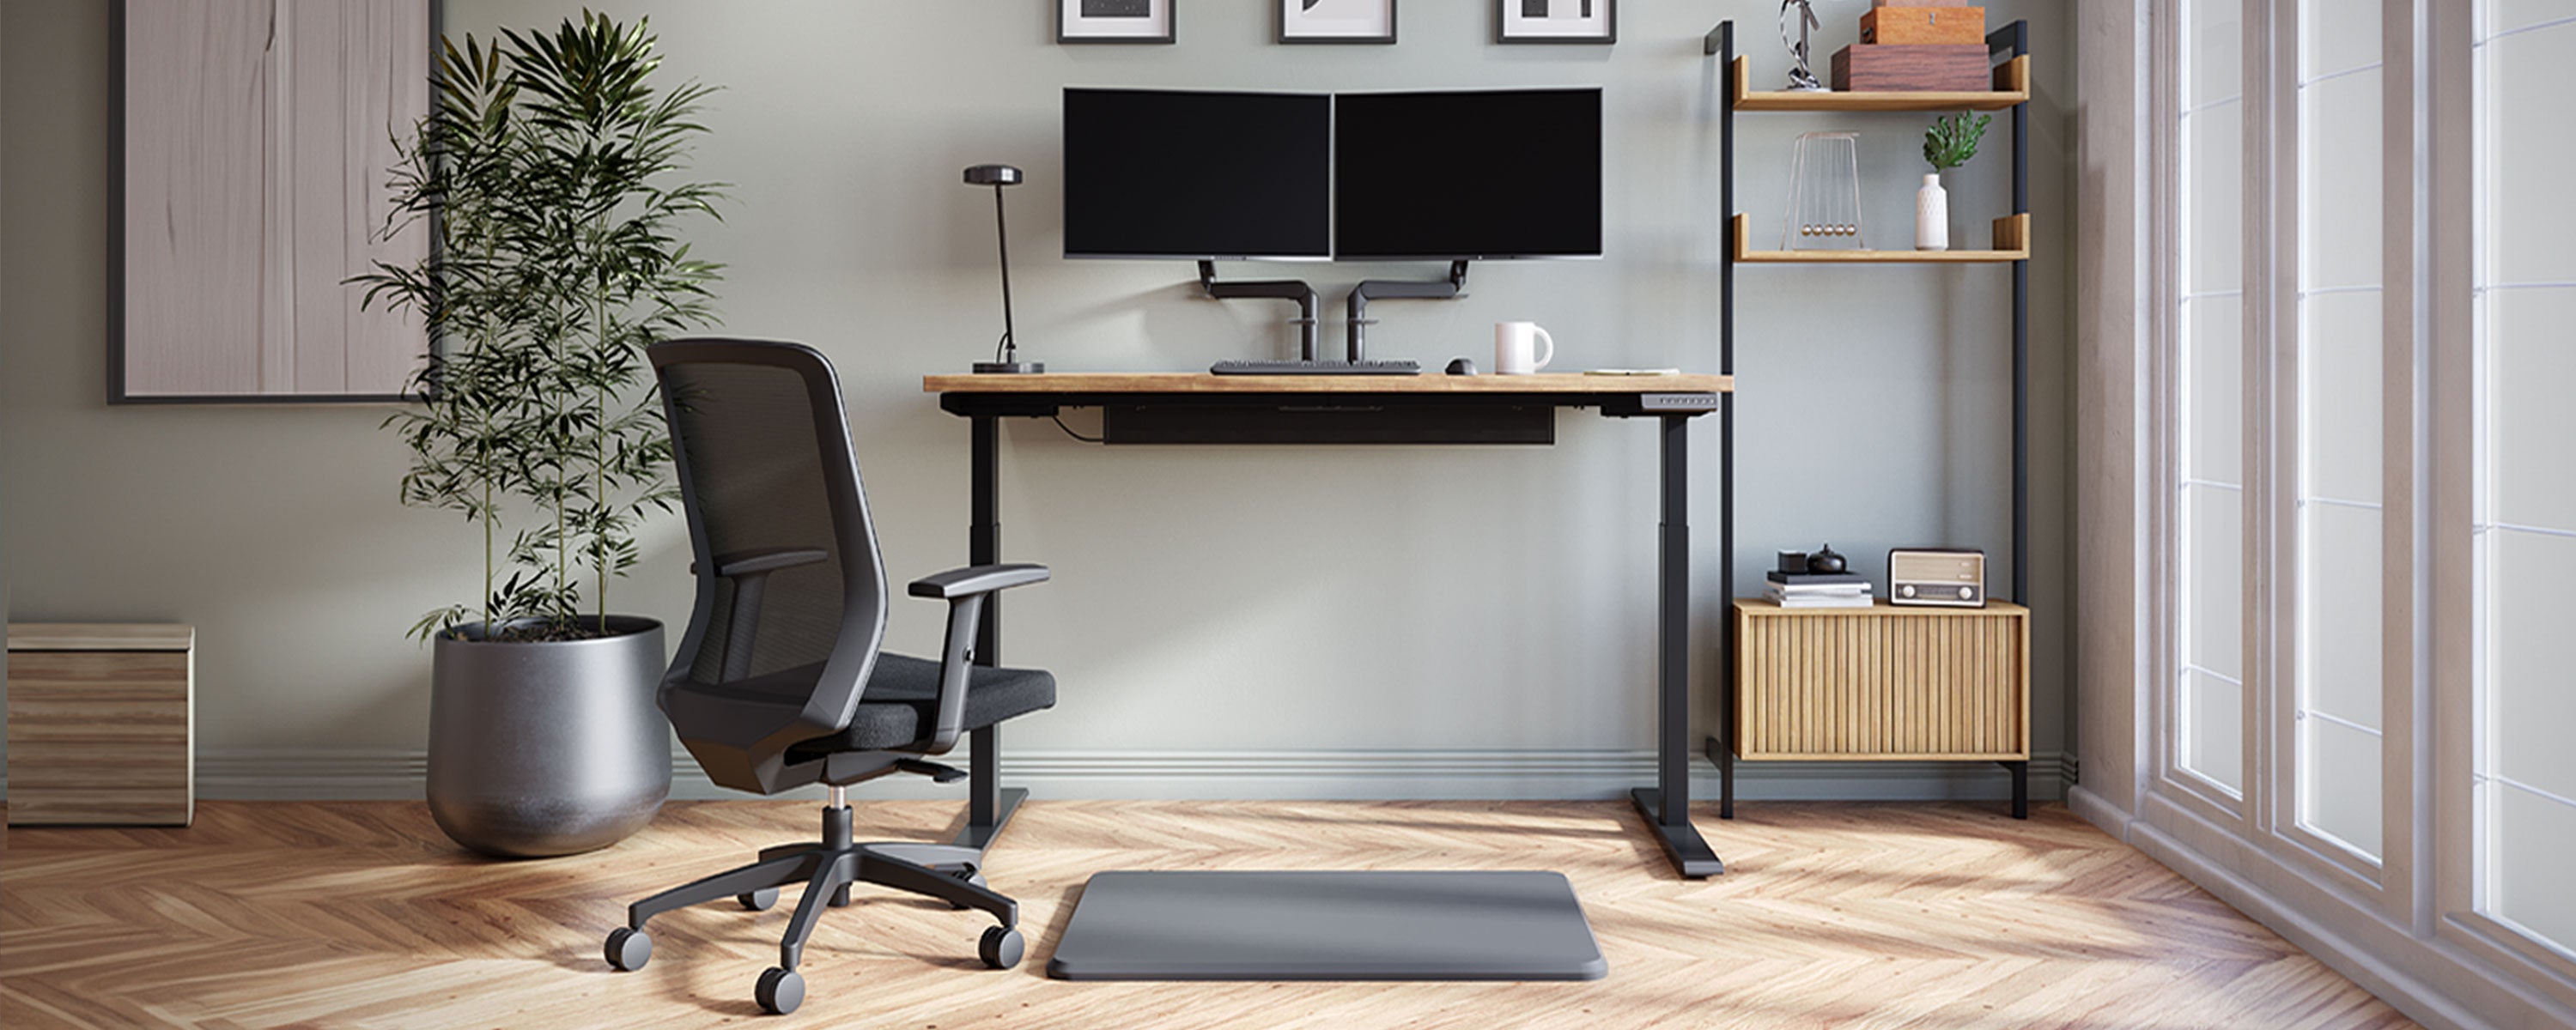 Standing Desks & Adjustable Sit-Stand Desks - StandDesk.Co